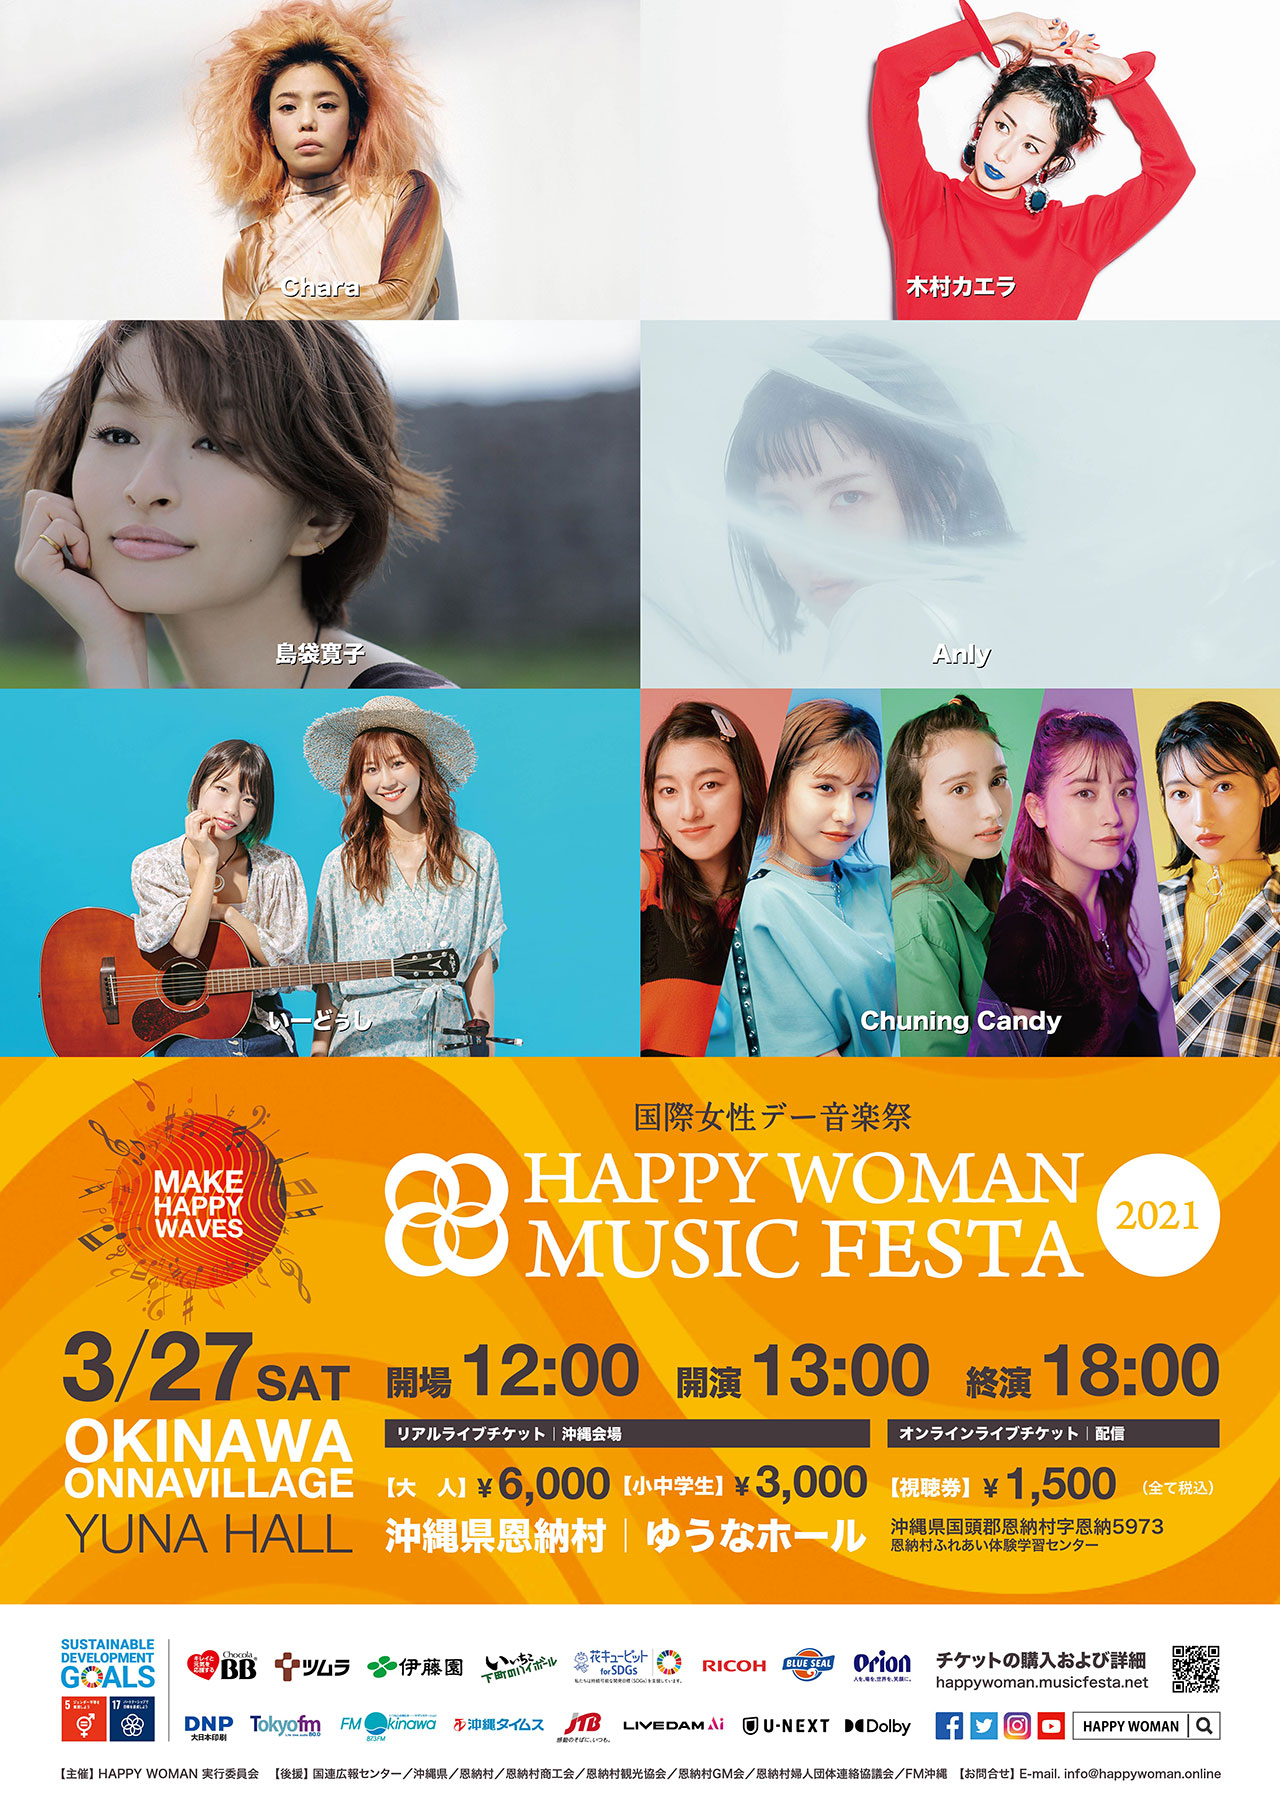 国際女性デー HAPPY WOMAN MUSIC FESTA 2021